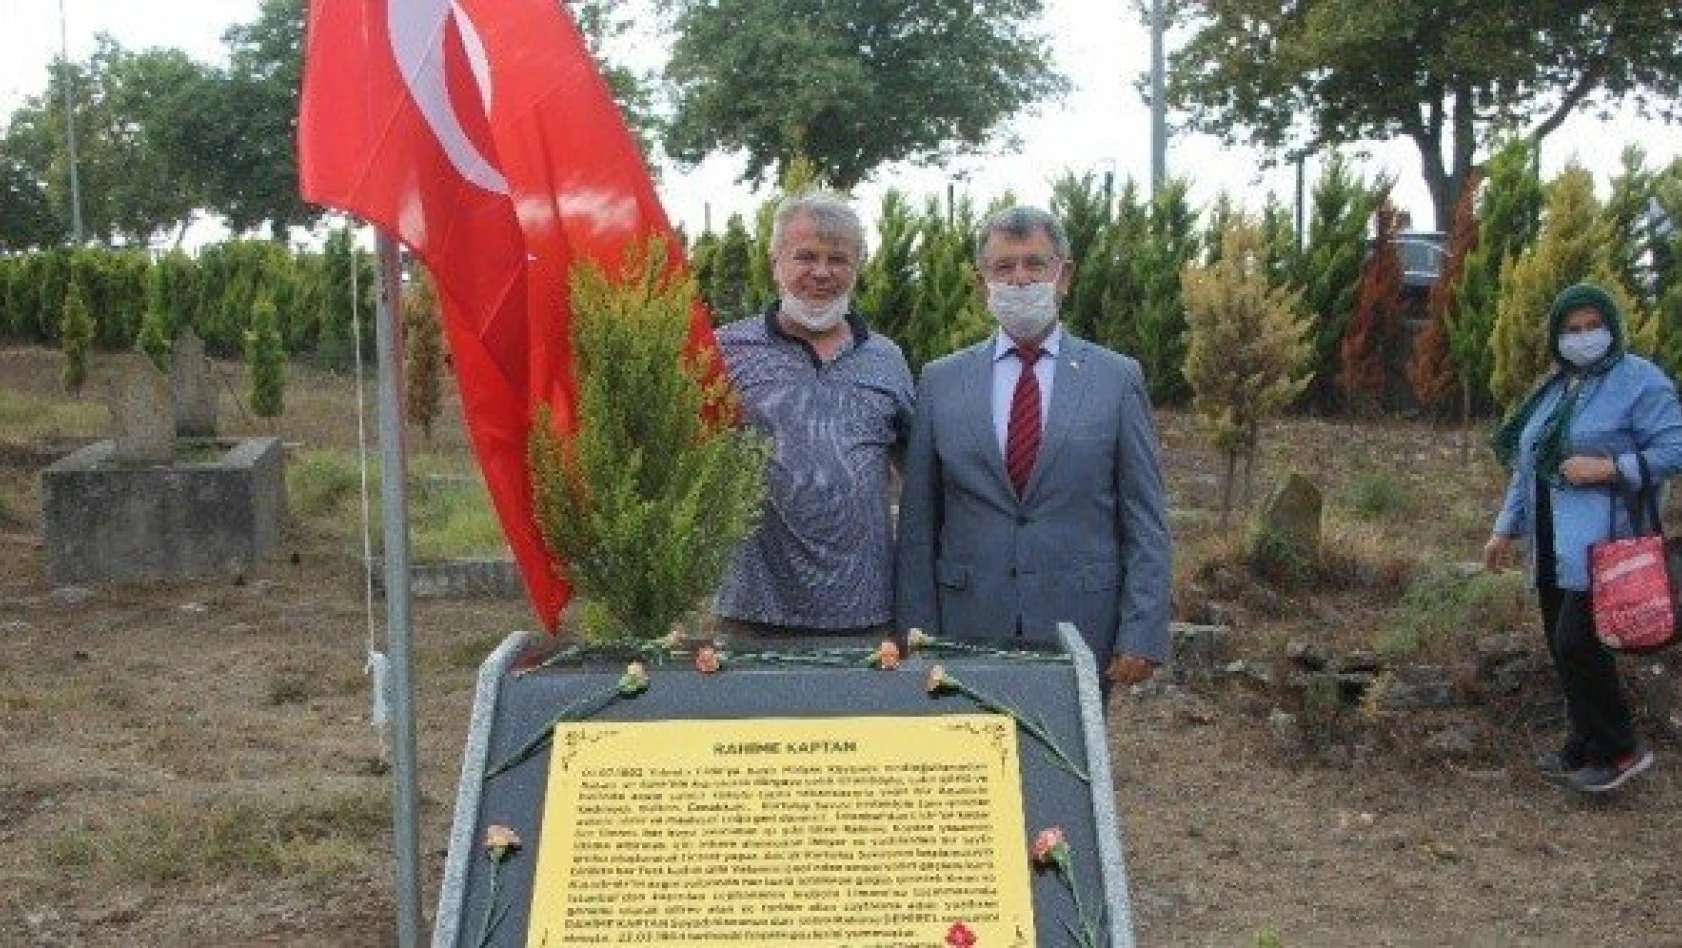 Kurtuluş Savaşı kahramanının kabrine anıt mezar yapıldı